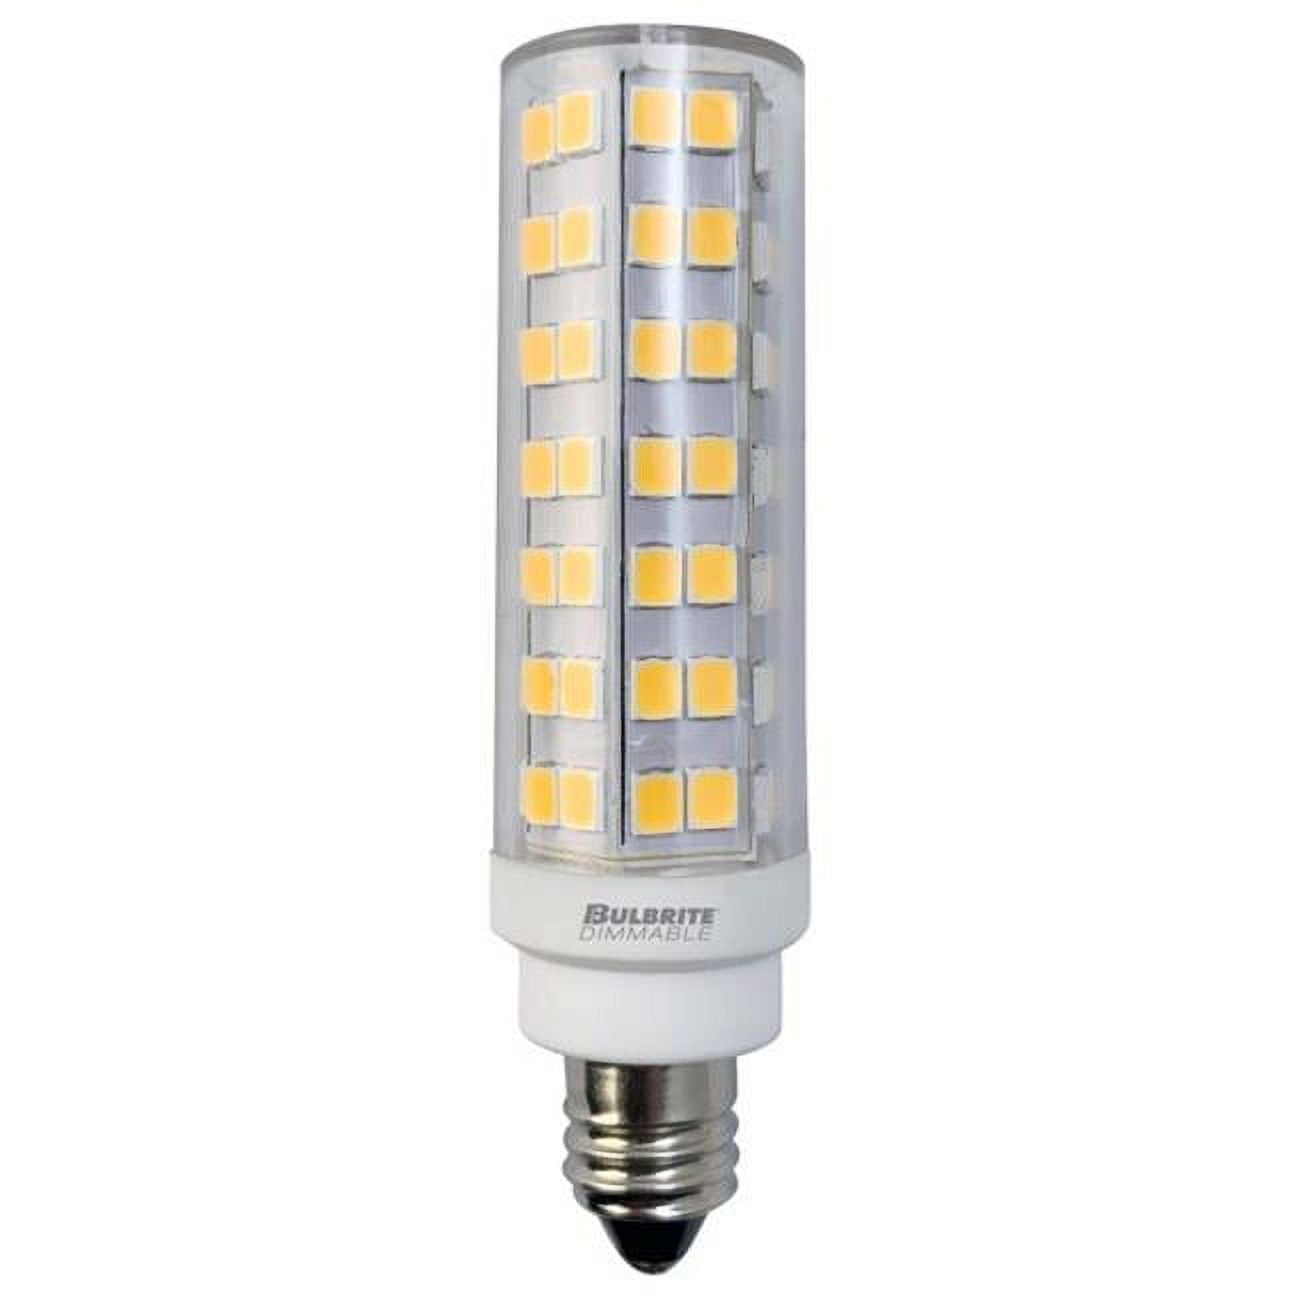 Picture of Bulbrite Pack of (2) 6.5 Watt 120V Dimmable Clear T6 LED Mini Light Bulbs with Candelabra (E12) Base  3000K Soft White Light  700 Lumens